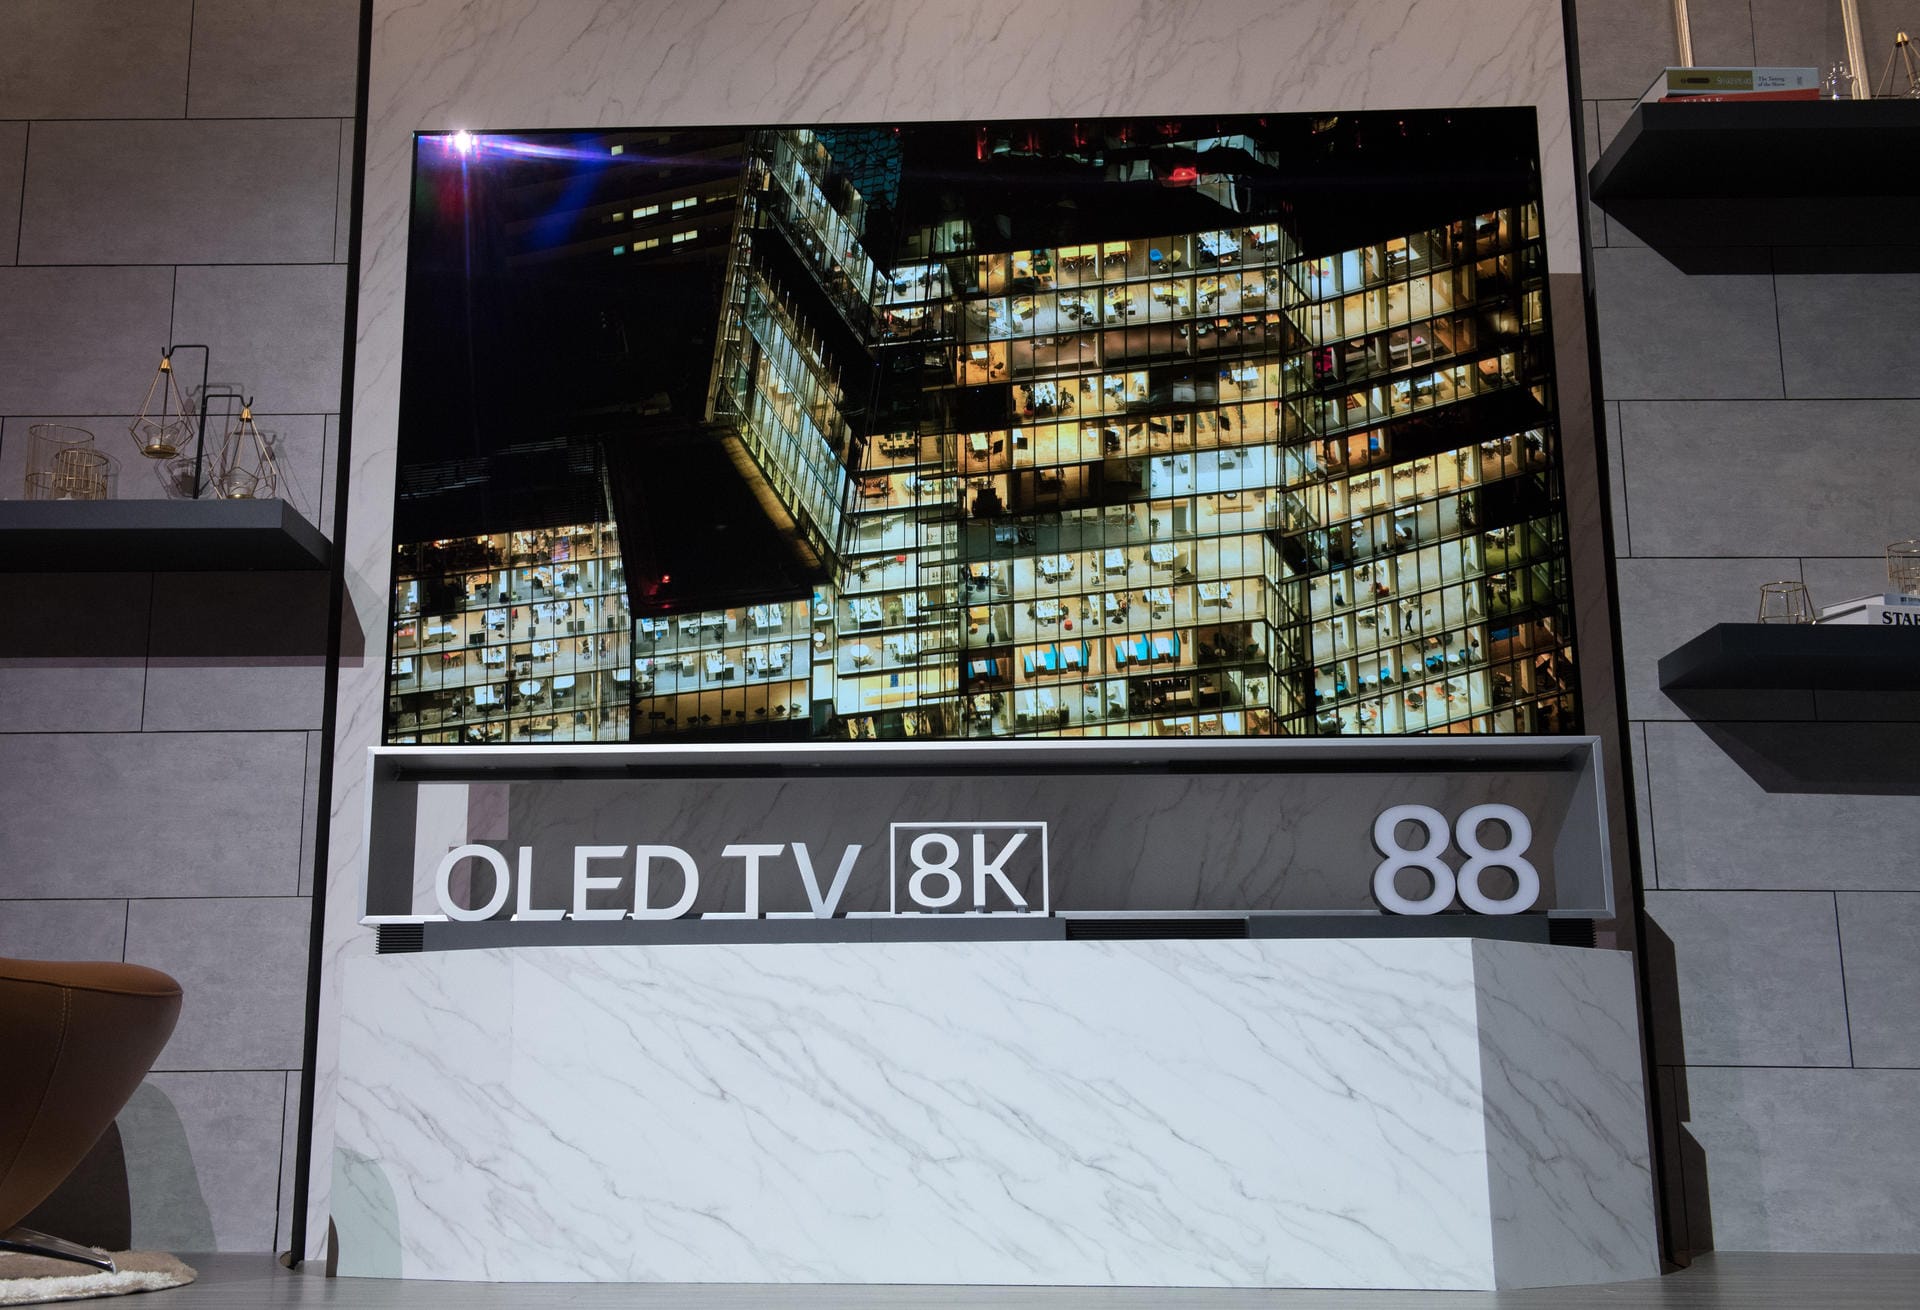 Groß wie eine Leinwand: Ganze 88 Zoll Displaydiagonale misst dieser LG-Fernseher mit OLED-Technologie.